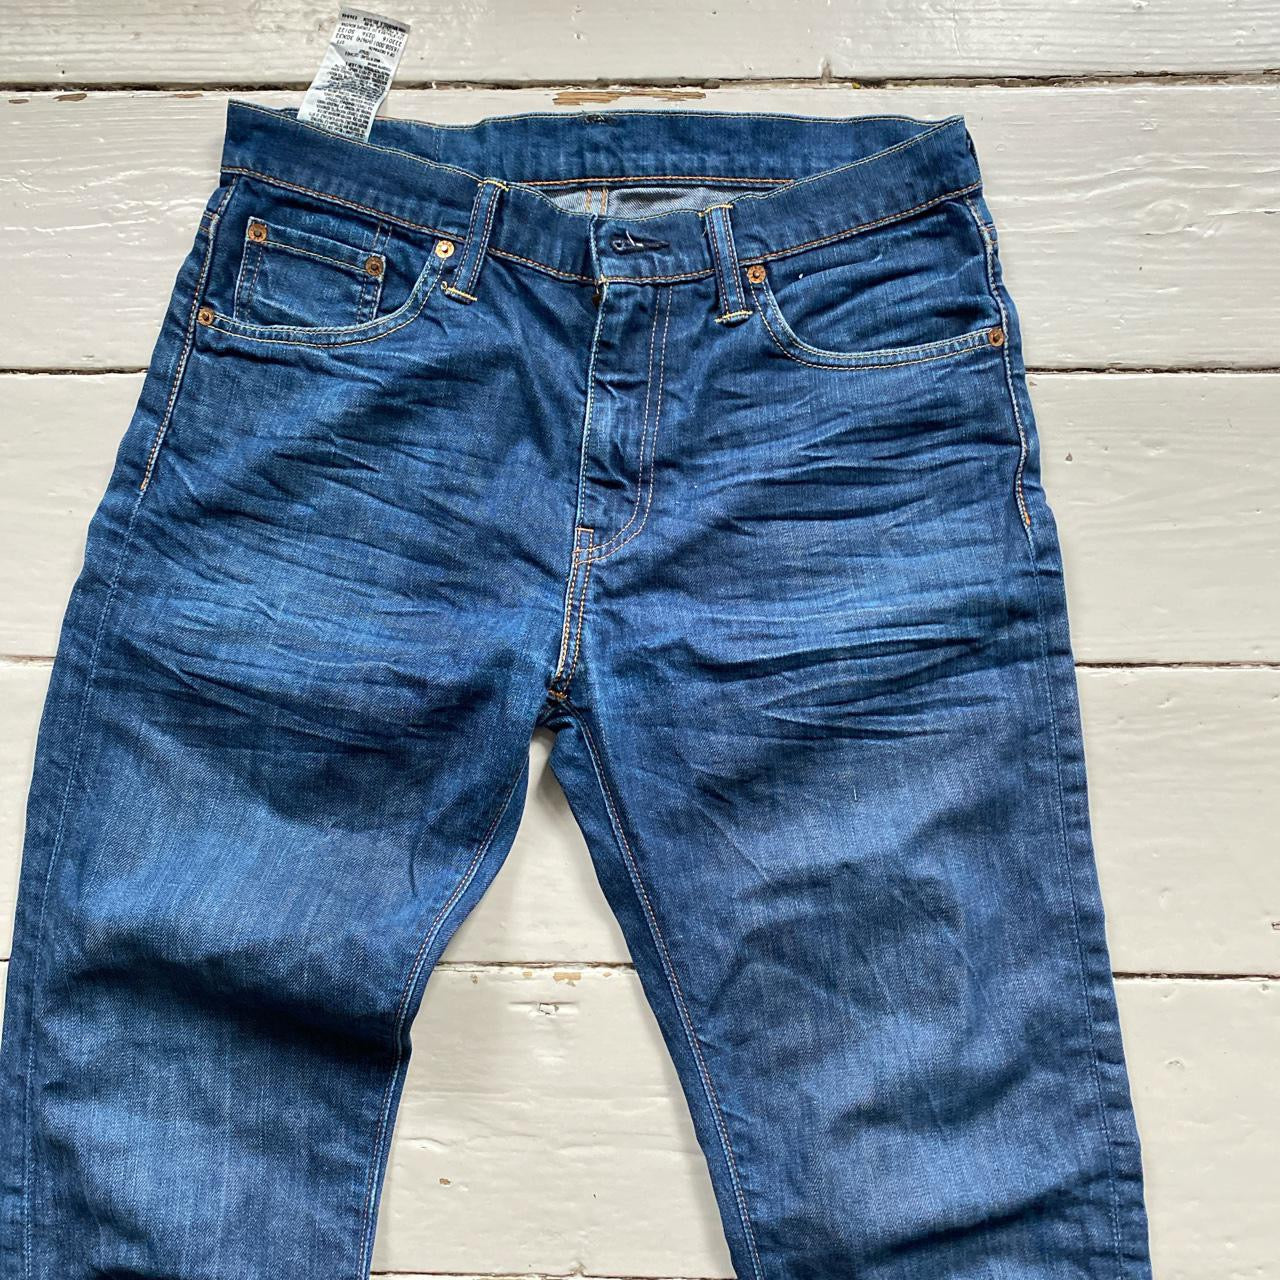 Levis 508 Slim Fit Jeans (30/28)